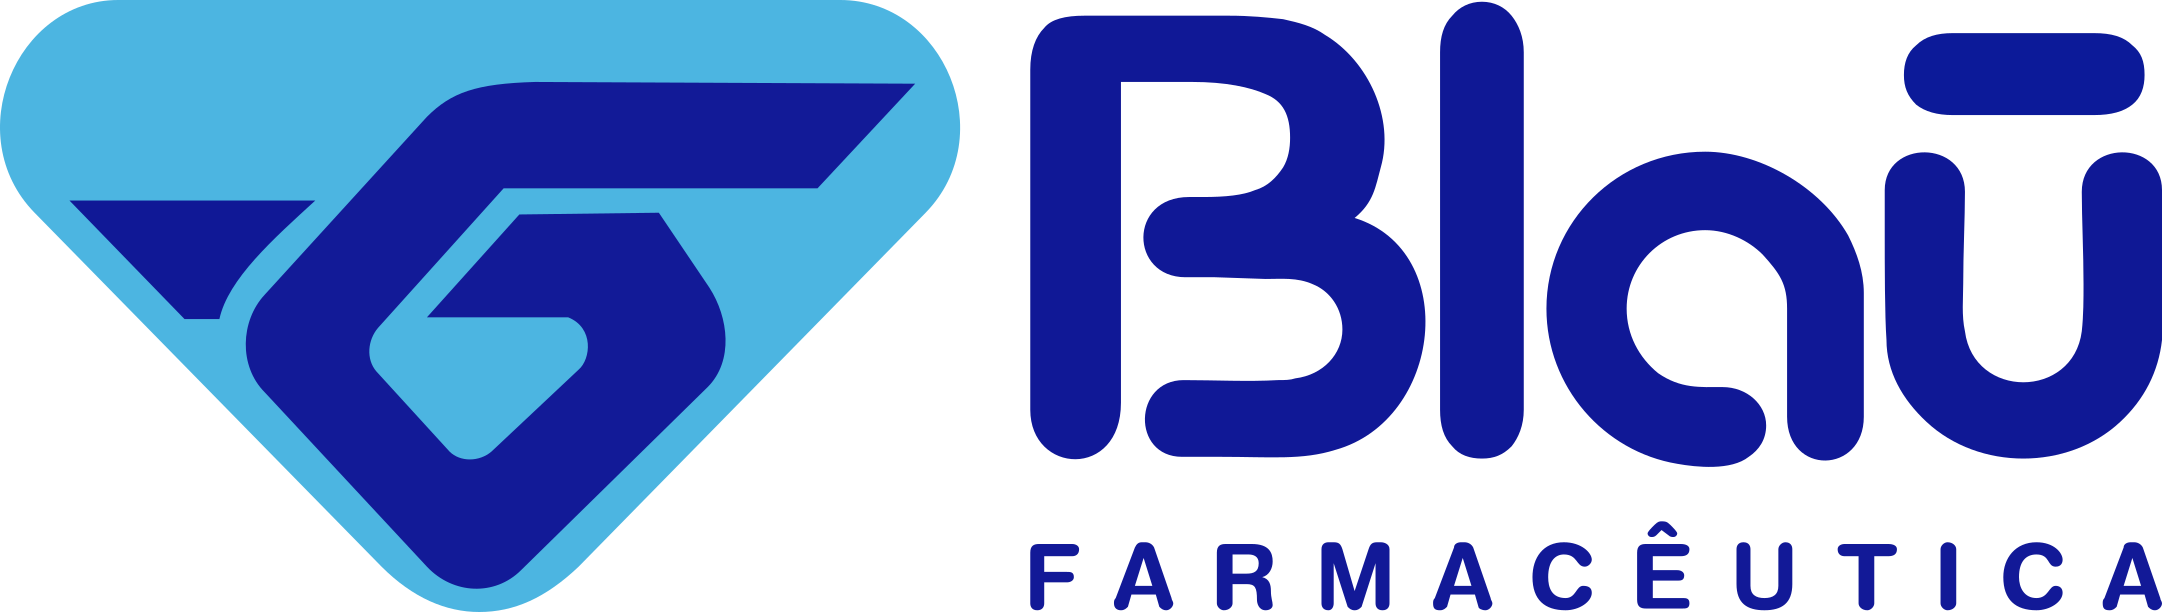 Blau Farmacêutica Logo - PNG e Vetor - Download de Logo